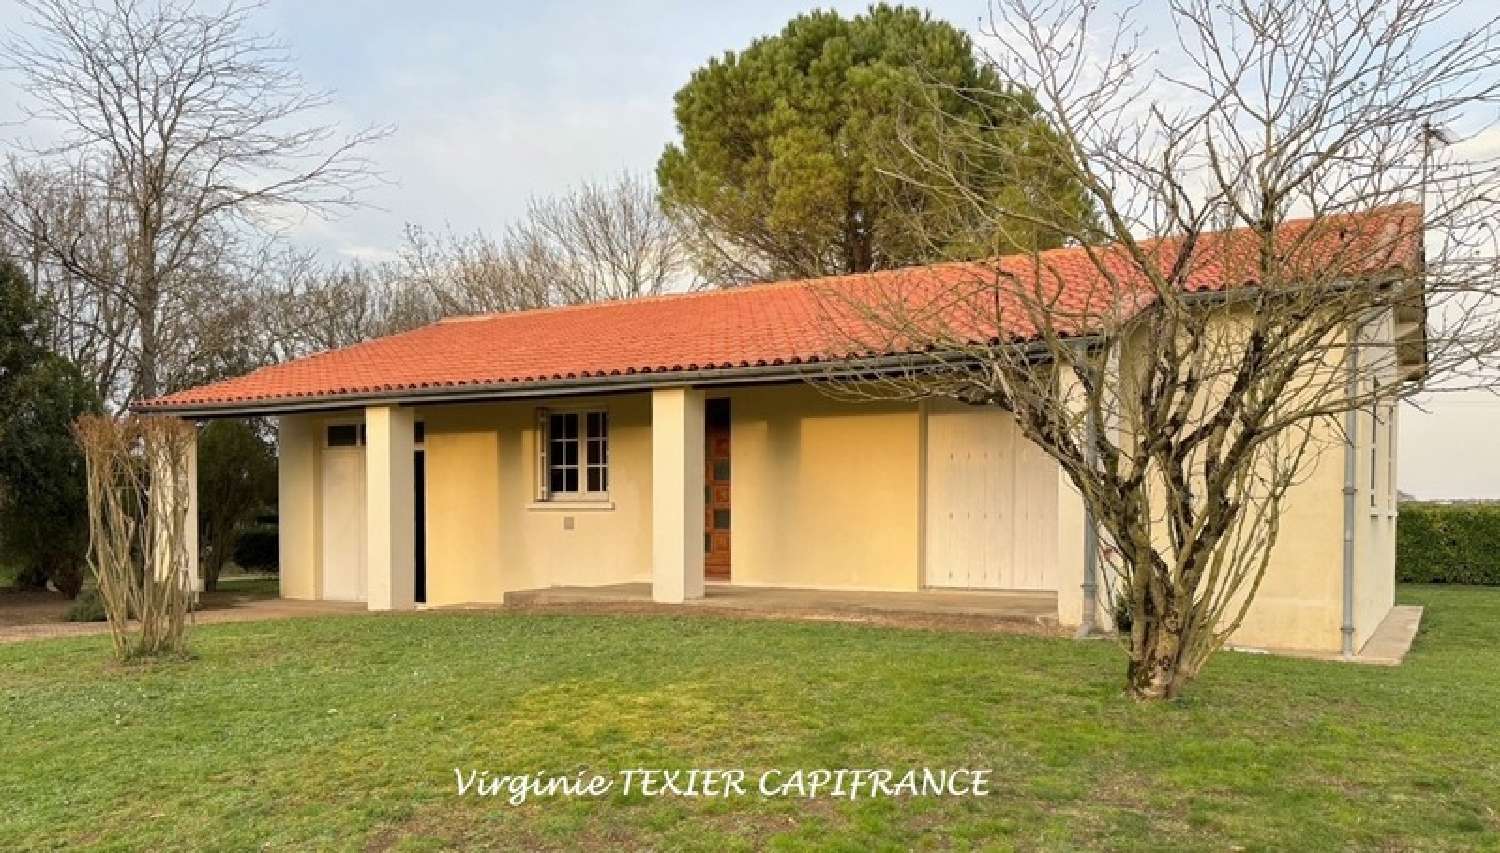  à vendre maison Landes Charente-Maritime 2